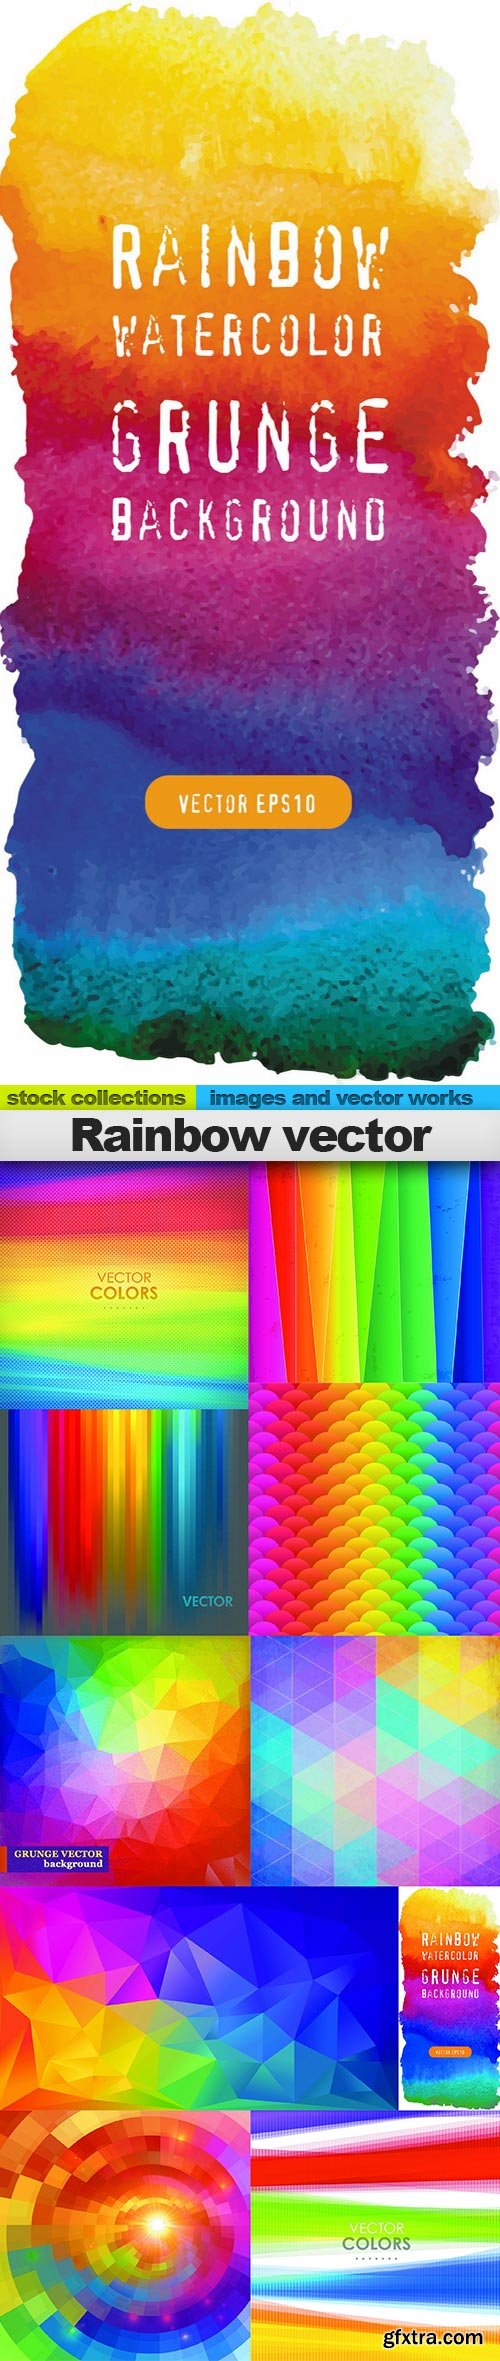 Rainbow vector, 10 x EPS